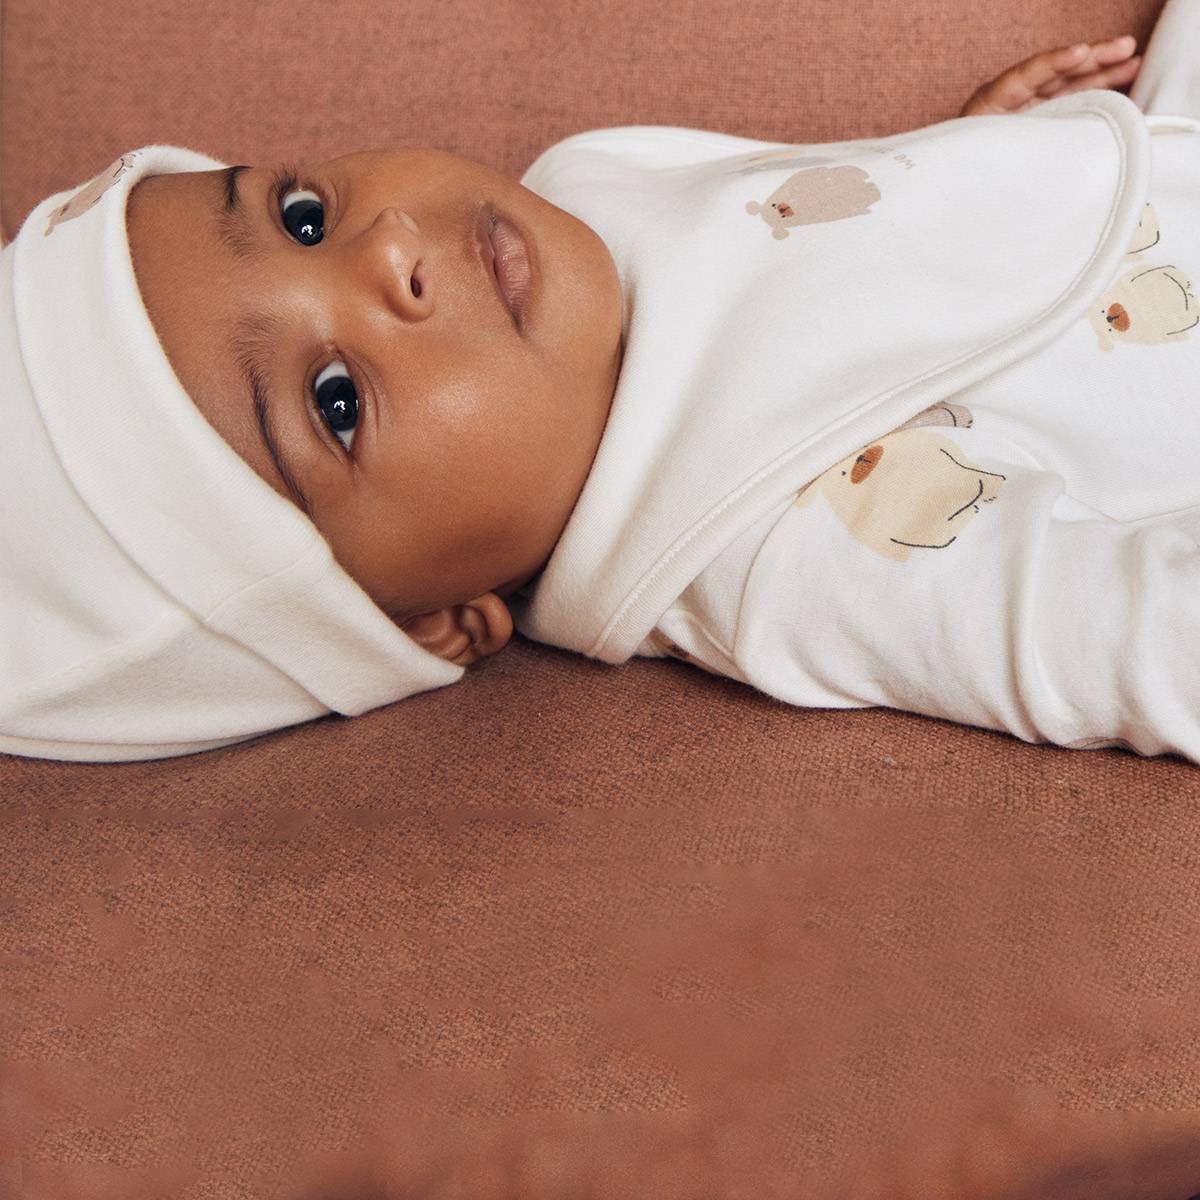 תינוק לובש תלבושת תואמת בצבע קרם. בגדי תינוקות